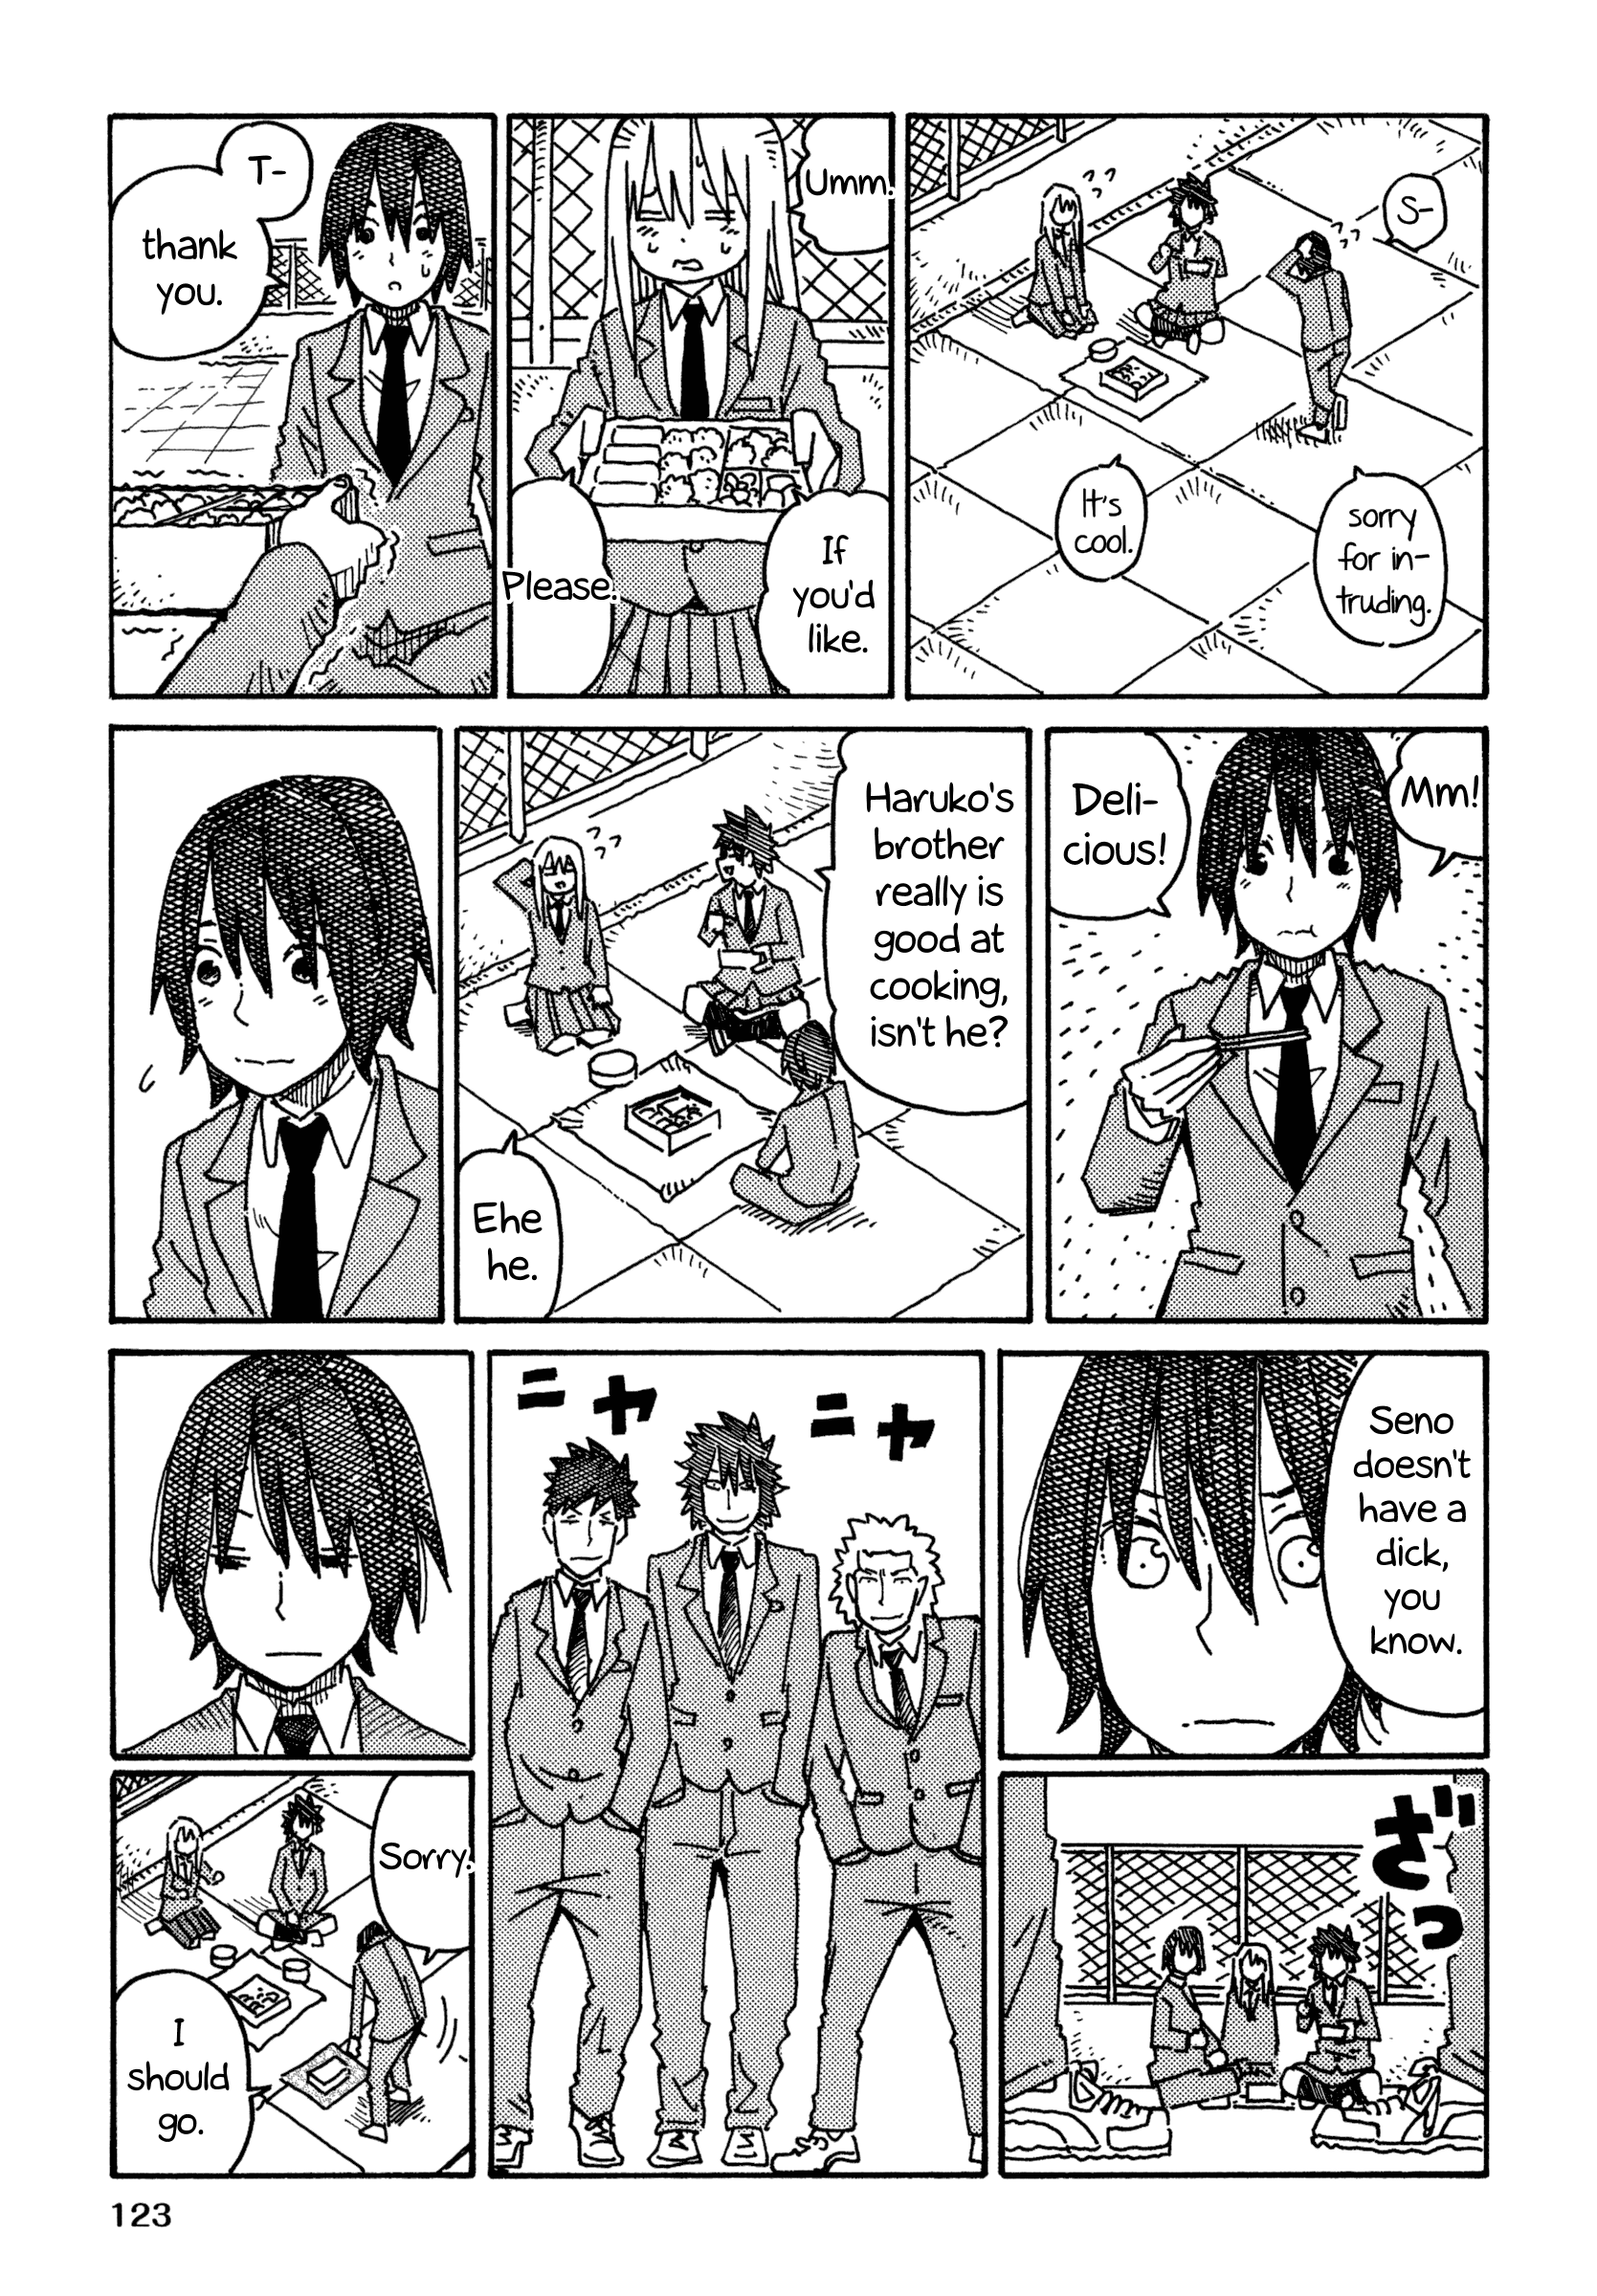 Hatarakanai Futari (The Jobless Siblings) Vol.9 Chapter 542.2: Haruko, Yuki-chan and Tomoharu-kun